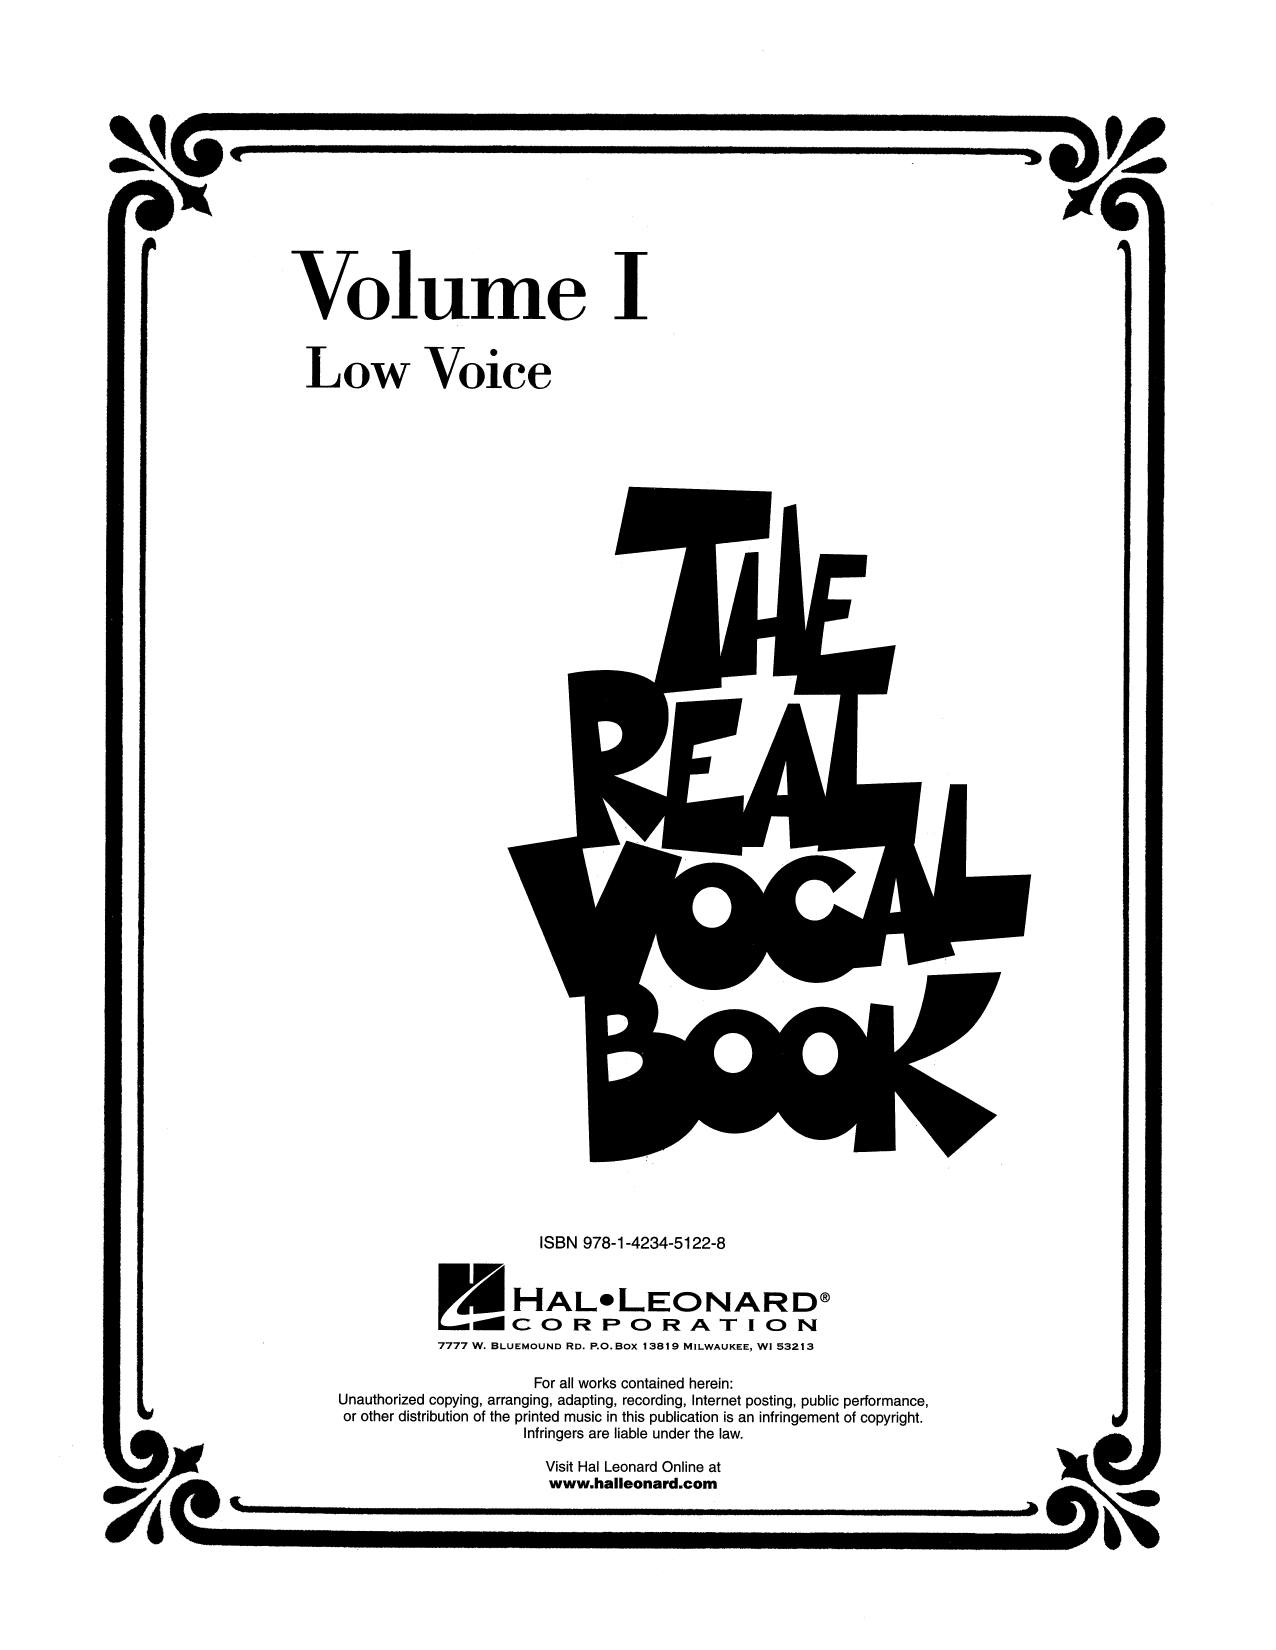 Louis Prima Jump, Jive An' Wail (Low Voice) sheet music notes printable PDF score